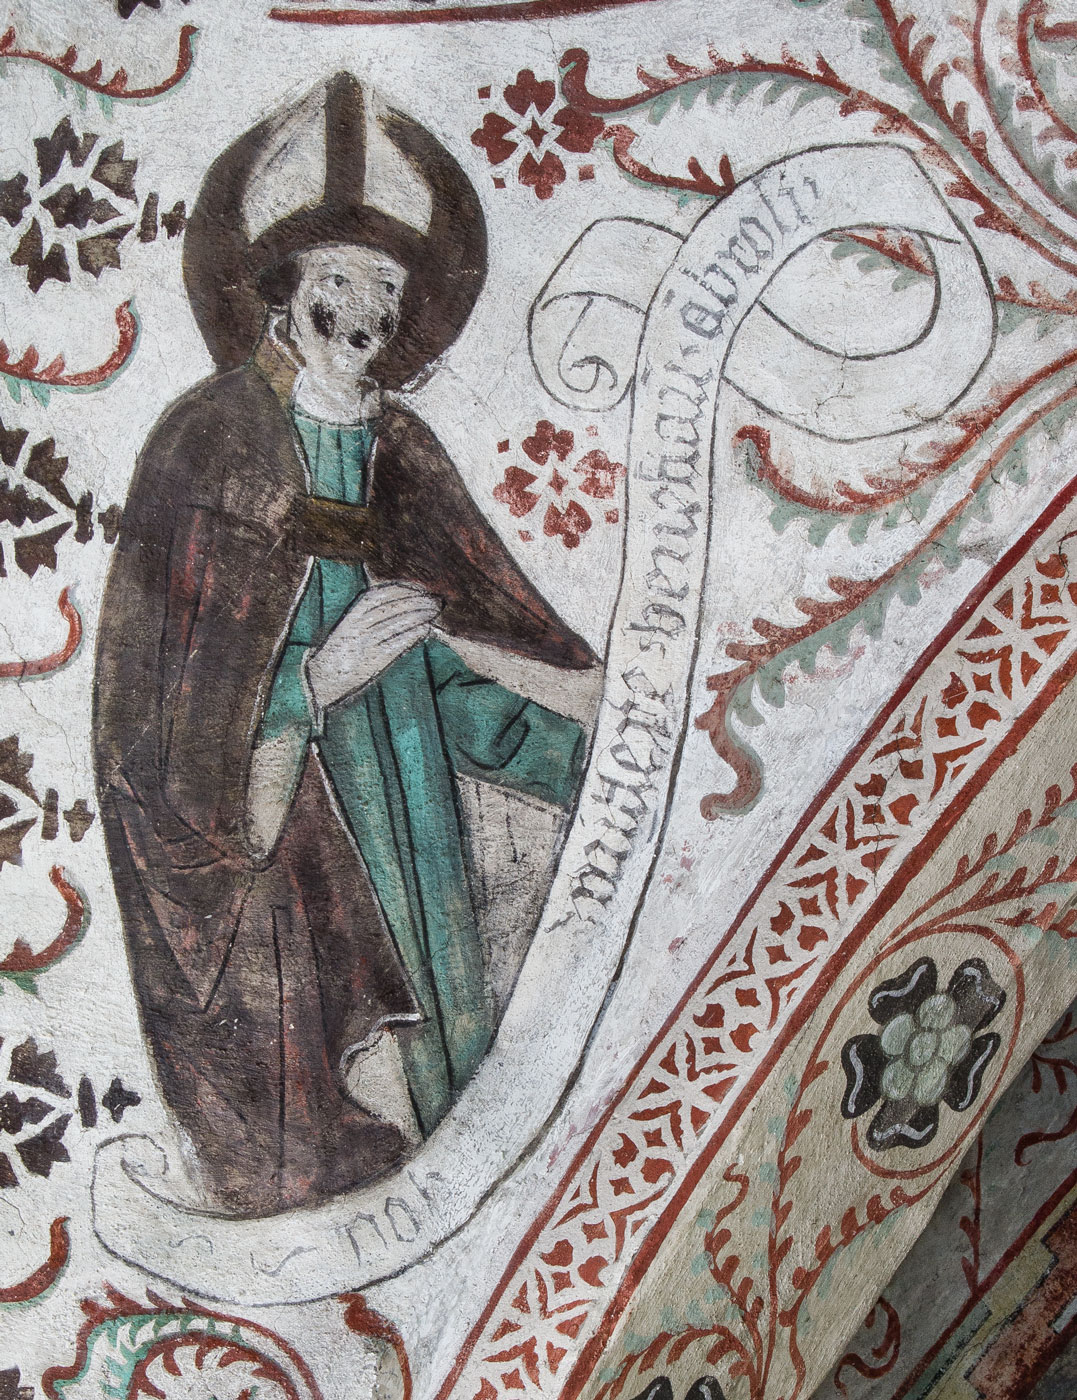 Ambrosius, biskop, en av de fyra latinska kyrkofäderna (S) - Odensala kyrka